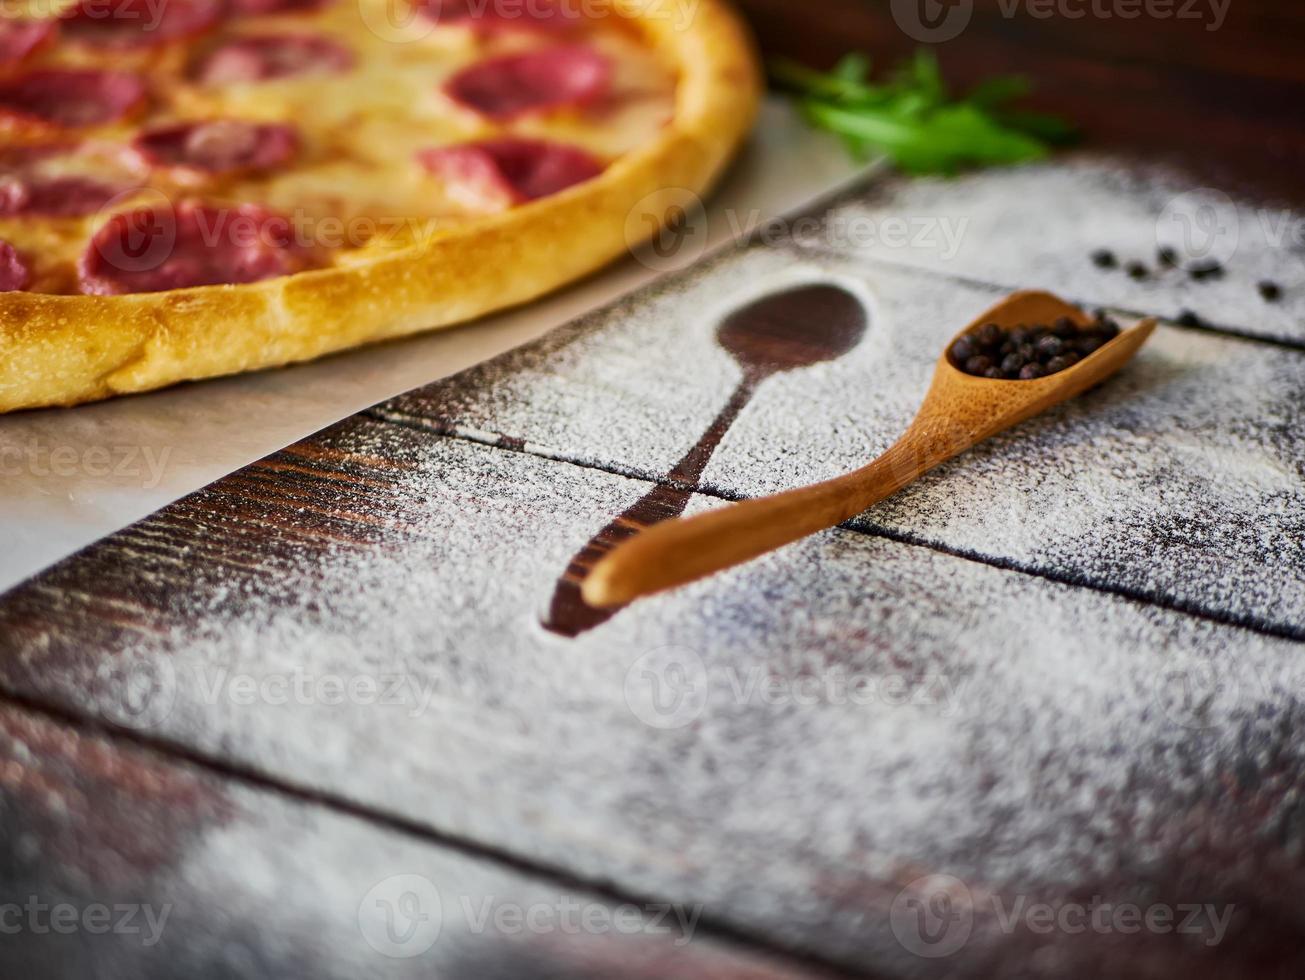 svartpeppar i en träslev på köksbordet foto